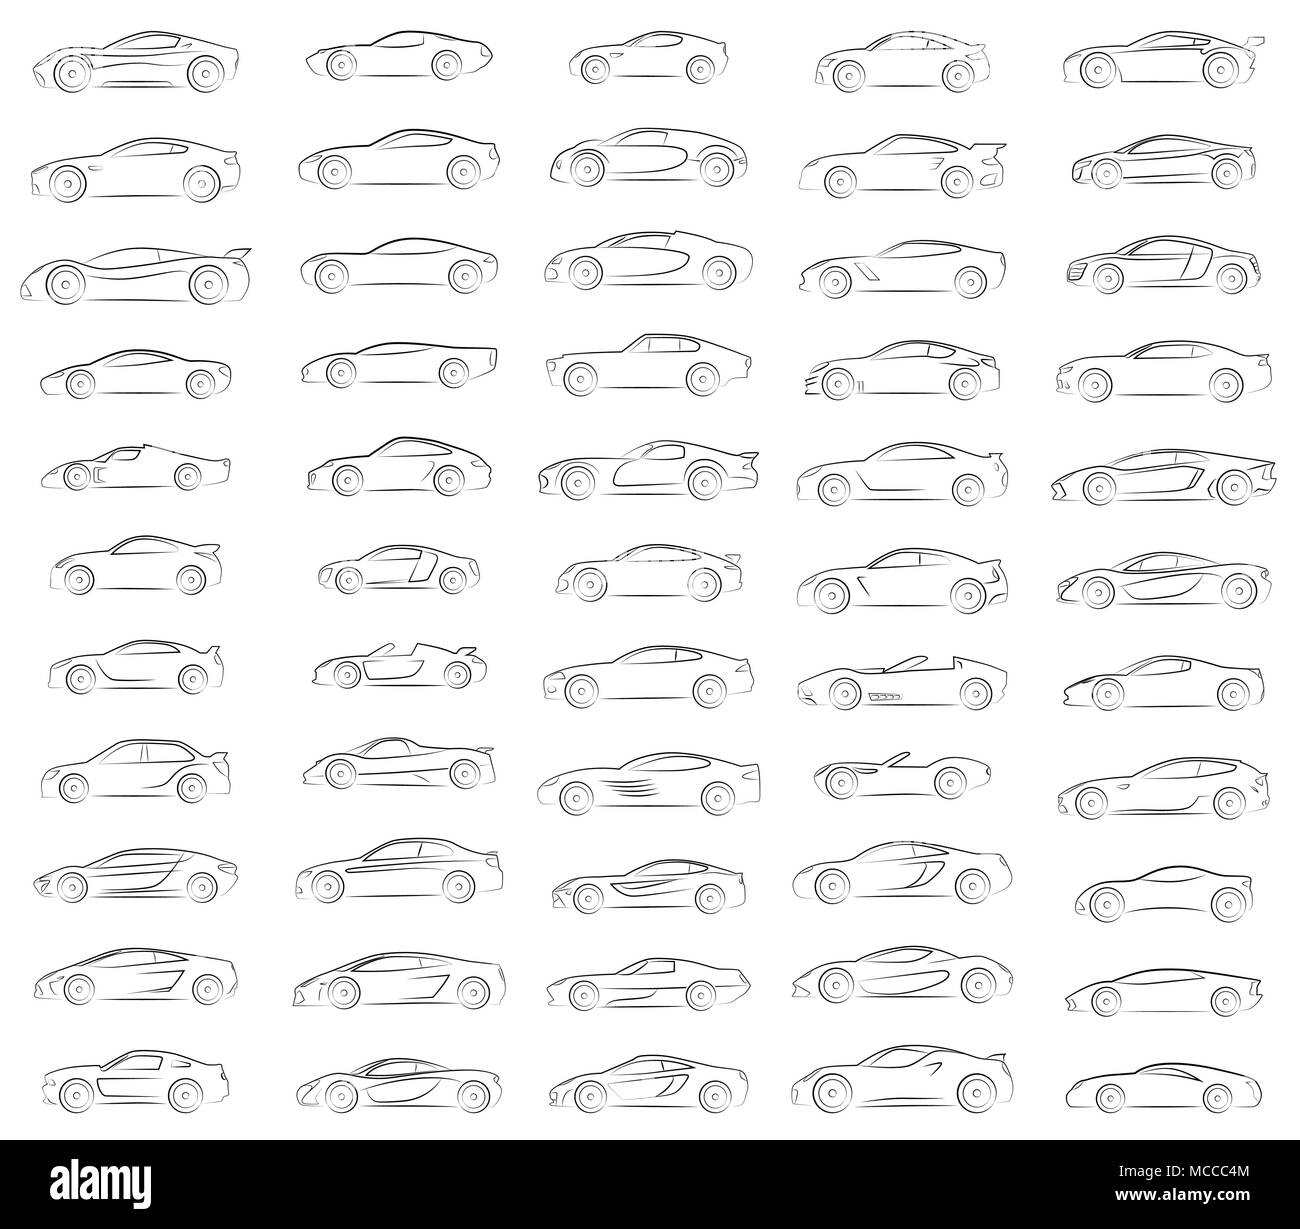 Grandes silhouettes Vecteur de voitures de sport Illustration de Vecteur